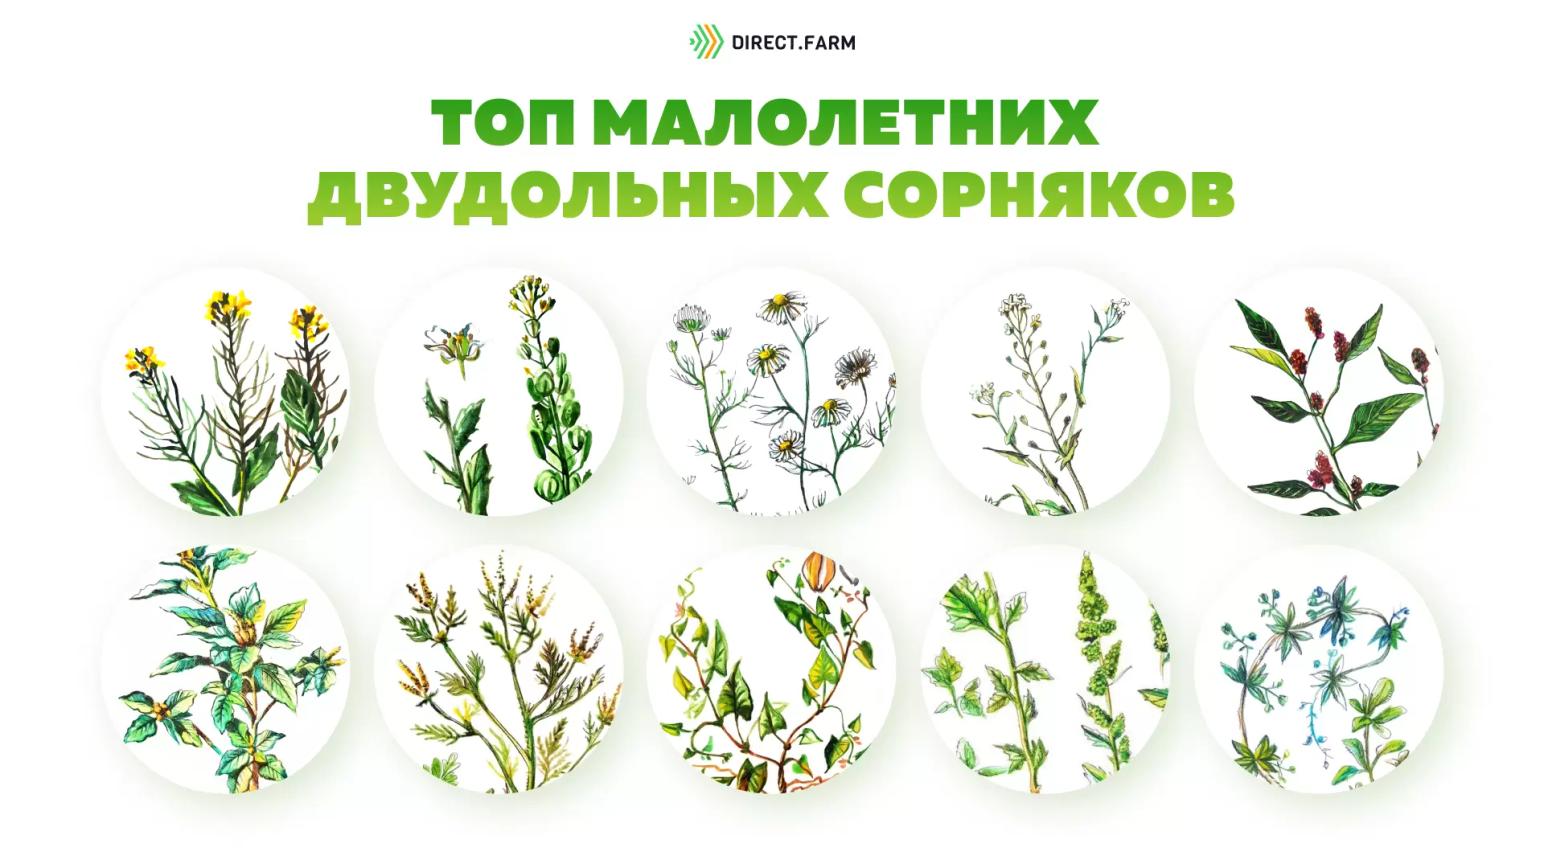 ТОП-12 малолетних двудольных сорняков